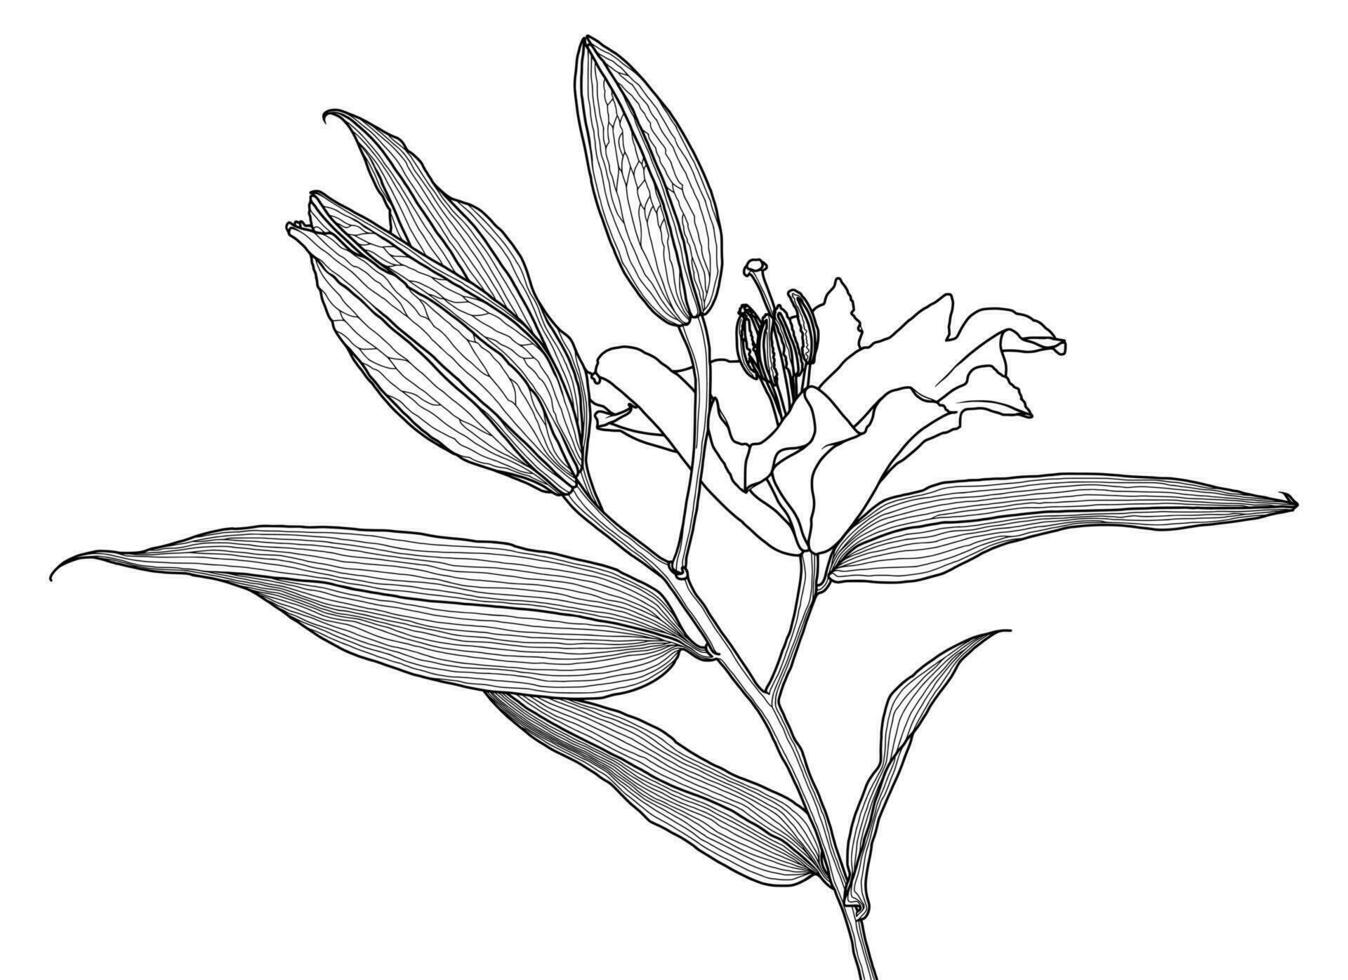 realistisk linjär teckning av lilja blomma med löv och knoppar, svart grafik på vit bakgrund, modern digital konst. element för design. vektor